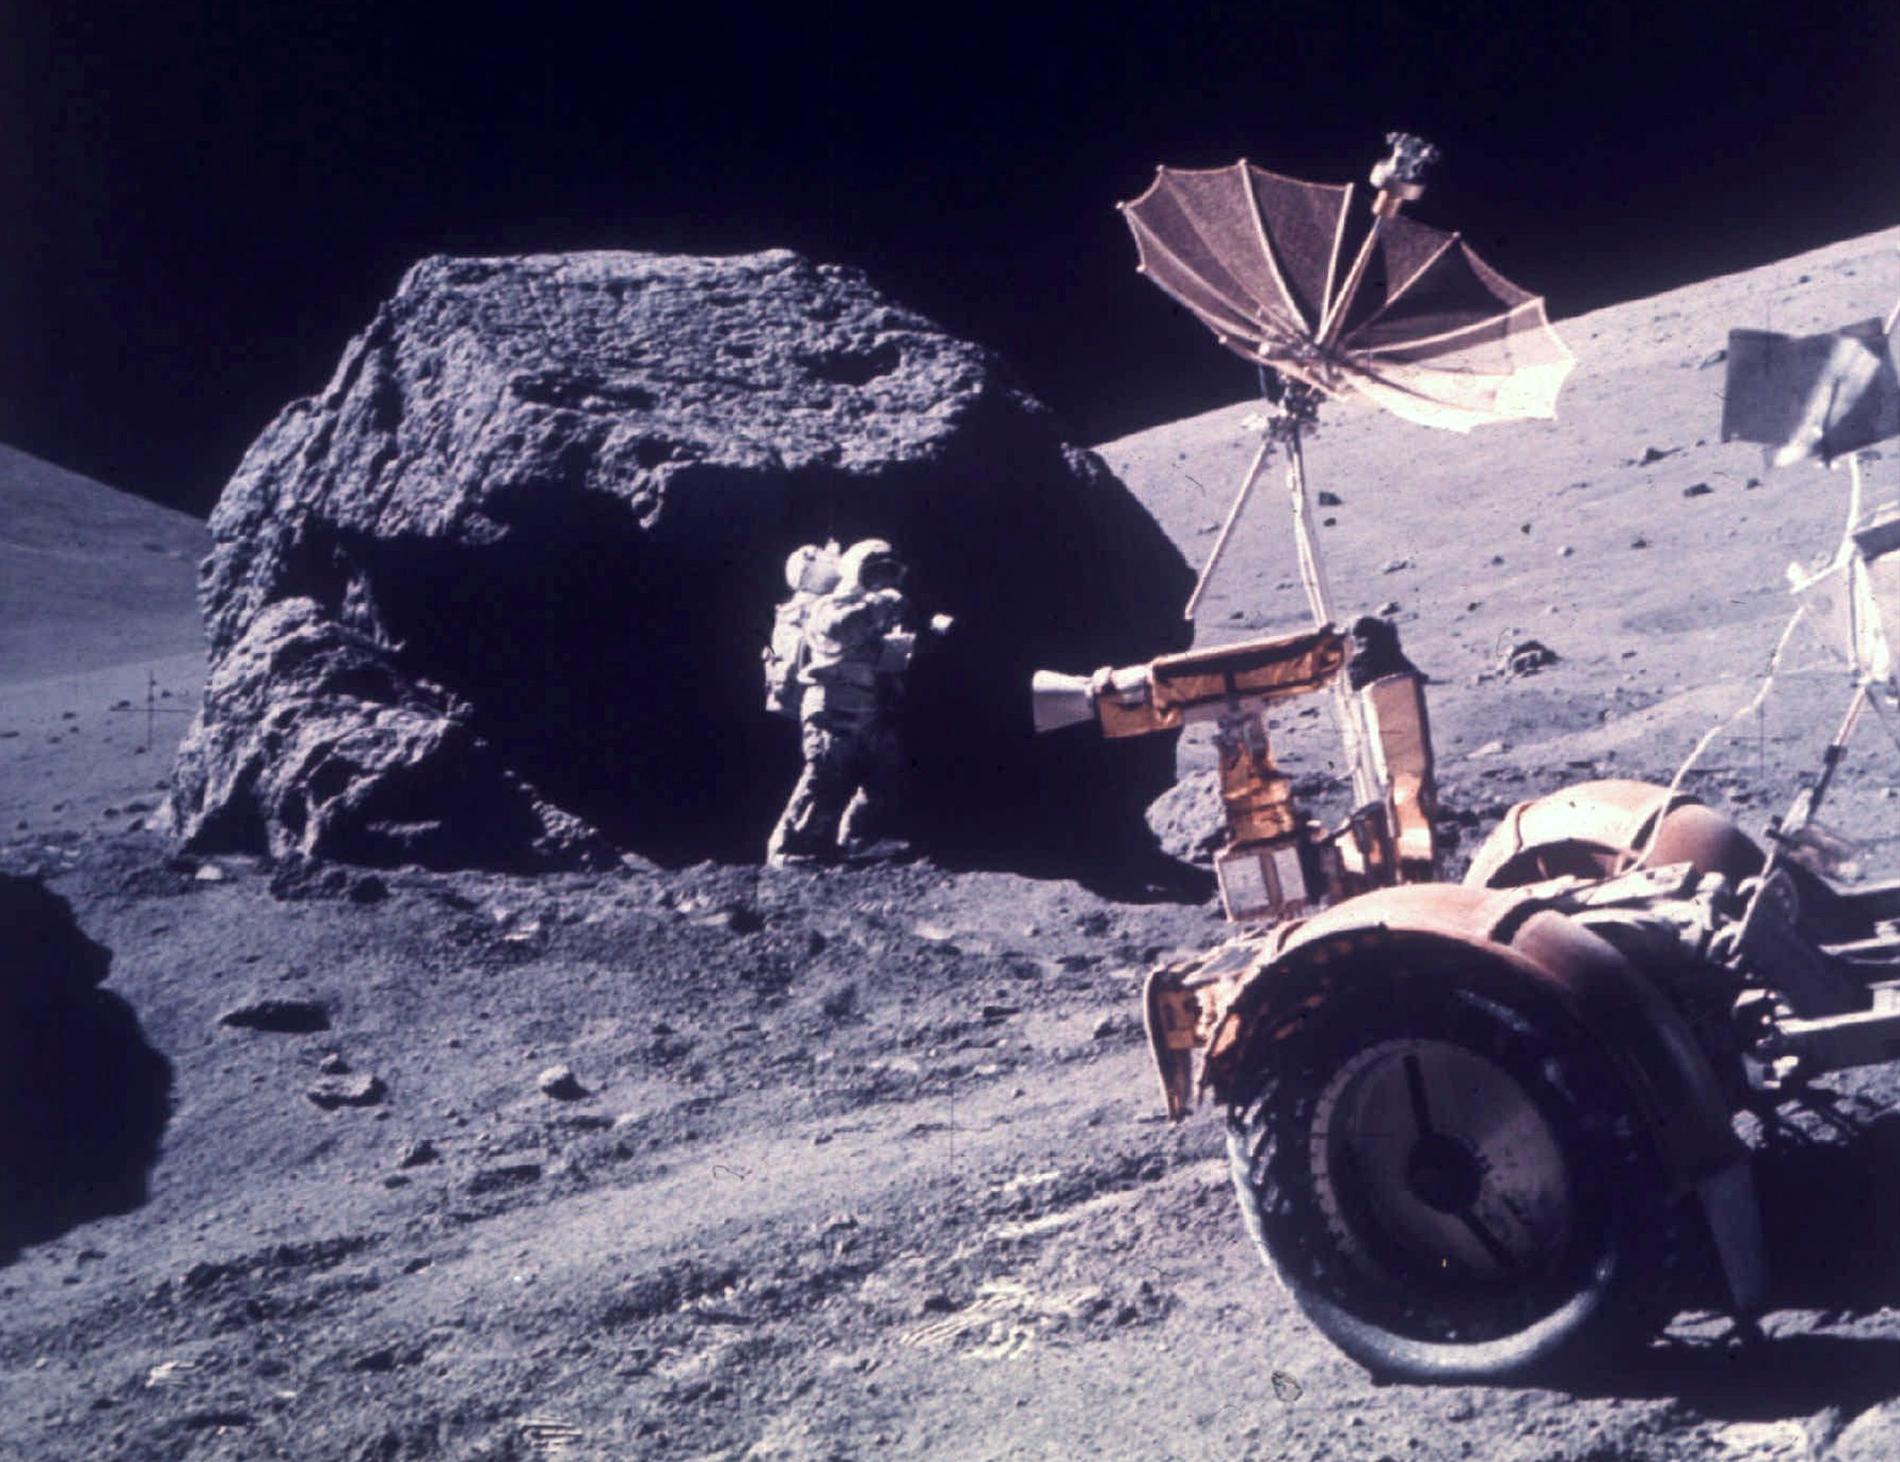 Senast någon satte sin fot på månen var 1972. 